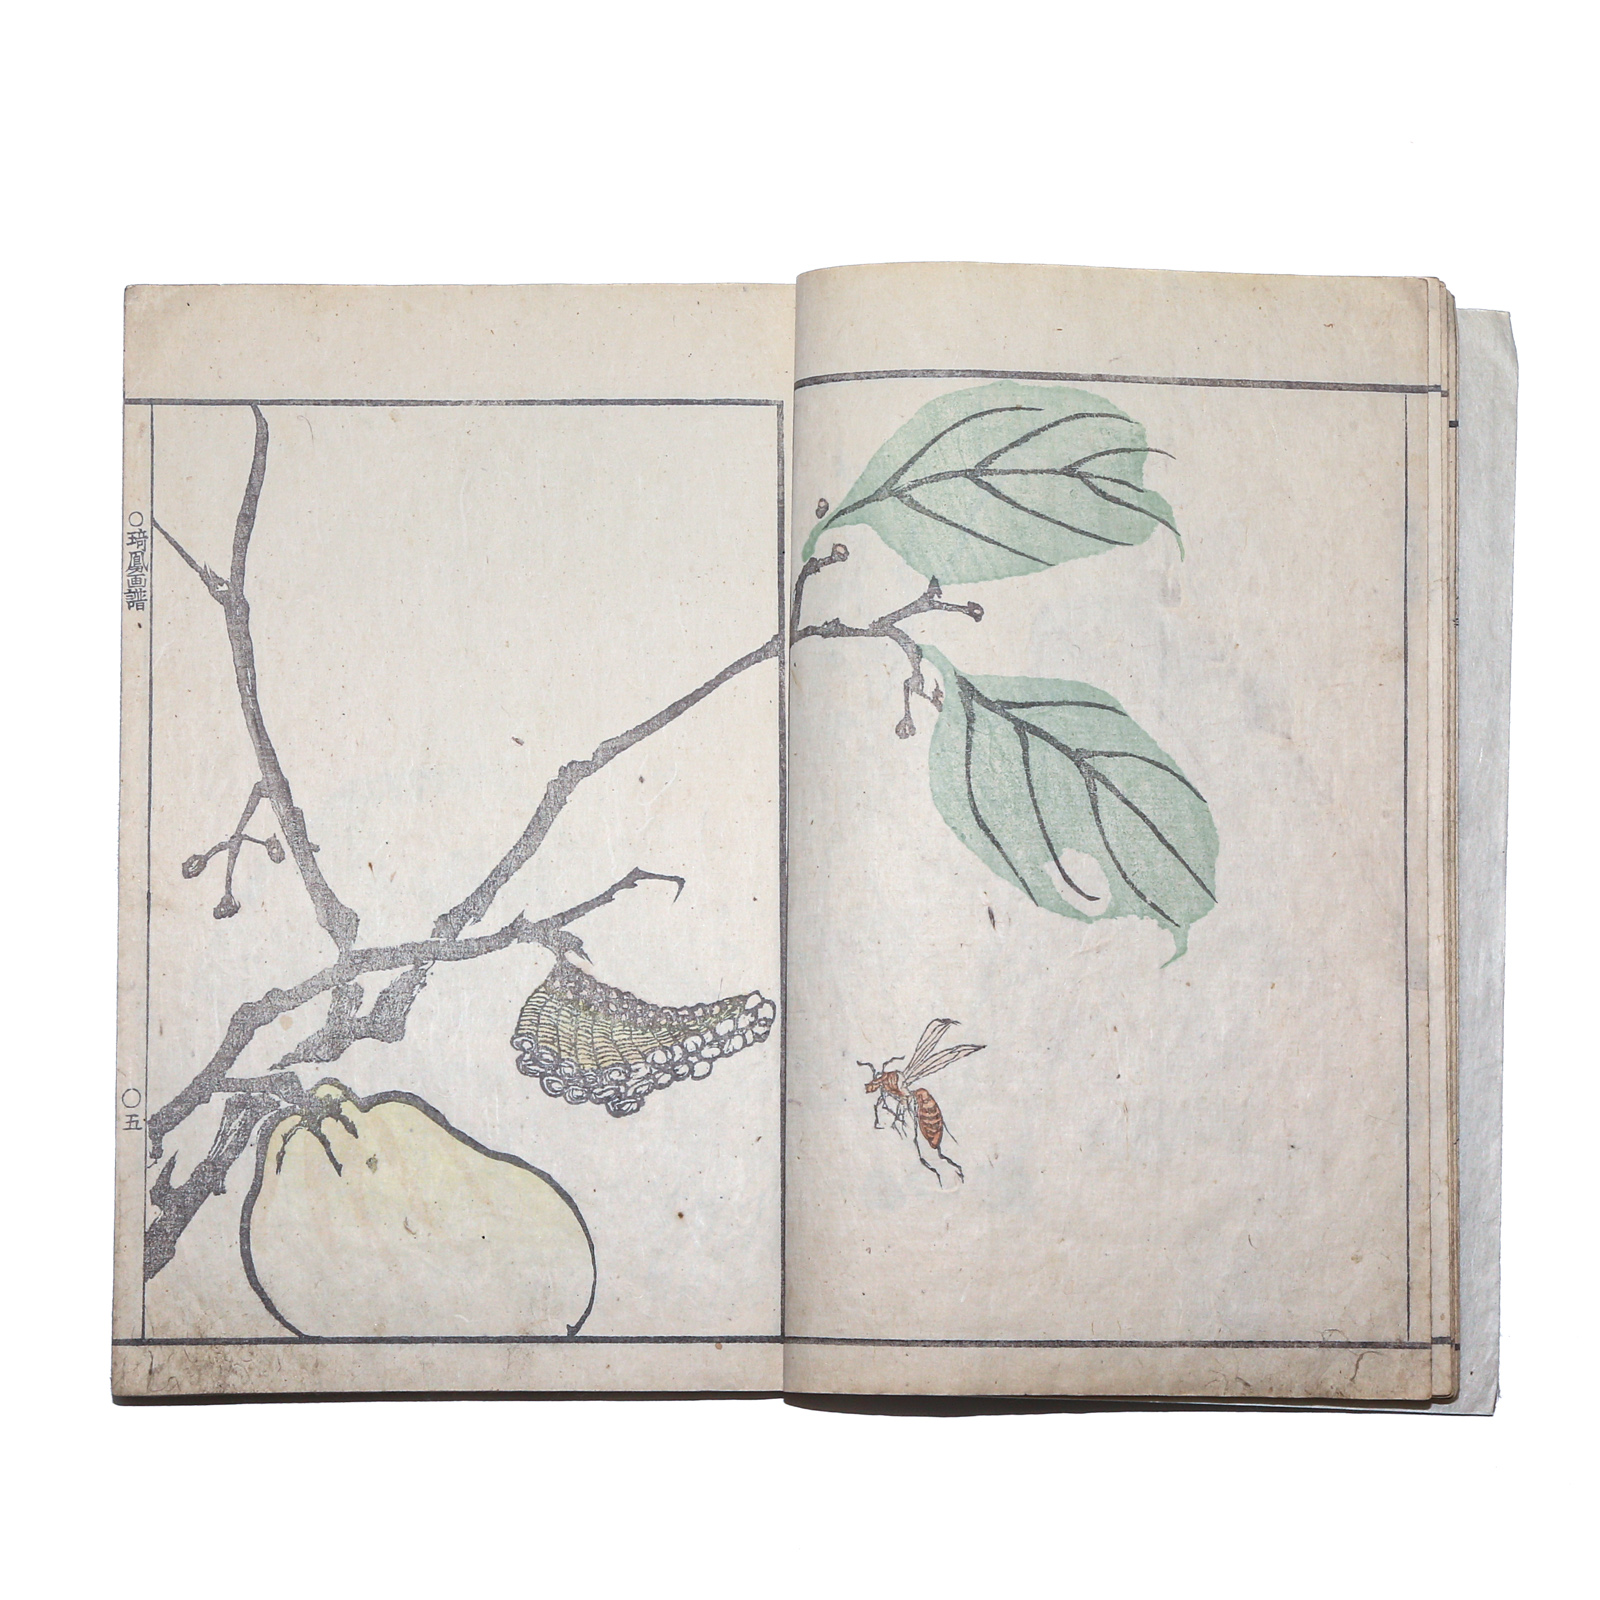 KIHO GAFU, A JAPANESE WOODCUT BOOK,